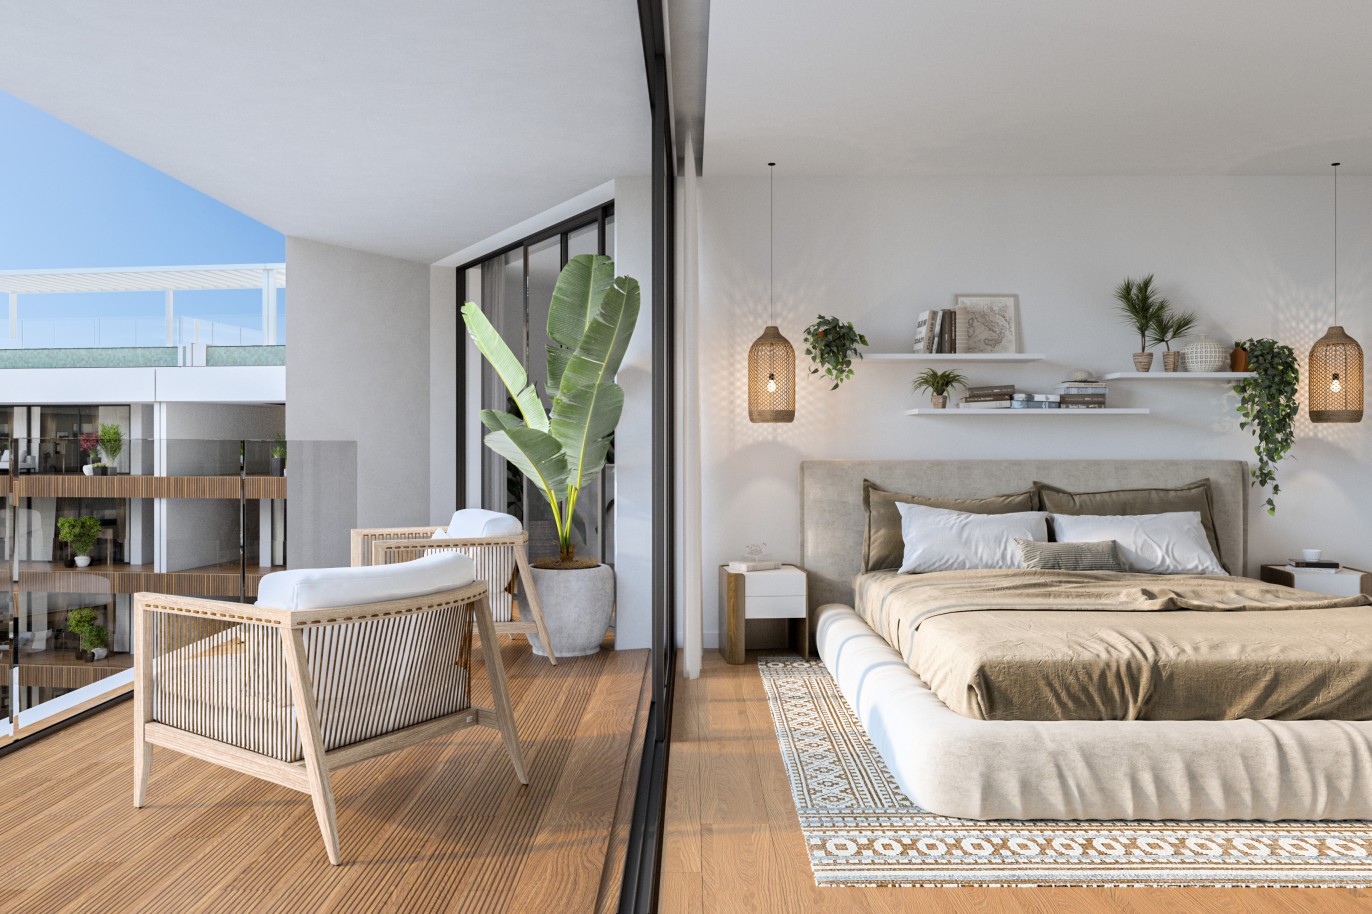 Appartements neufs avec vue sur mer, 1, 2 & 3 chambres, à vendre à Olhão, Algarve_244352